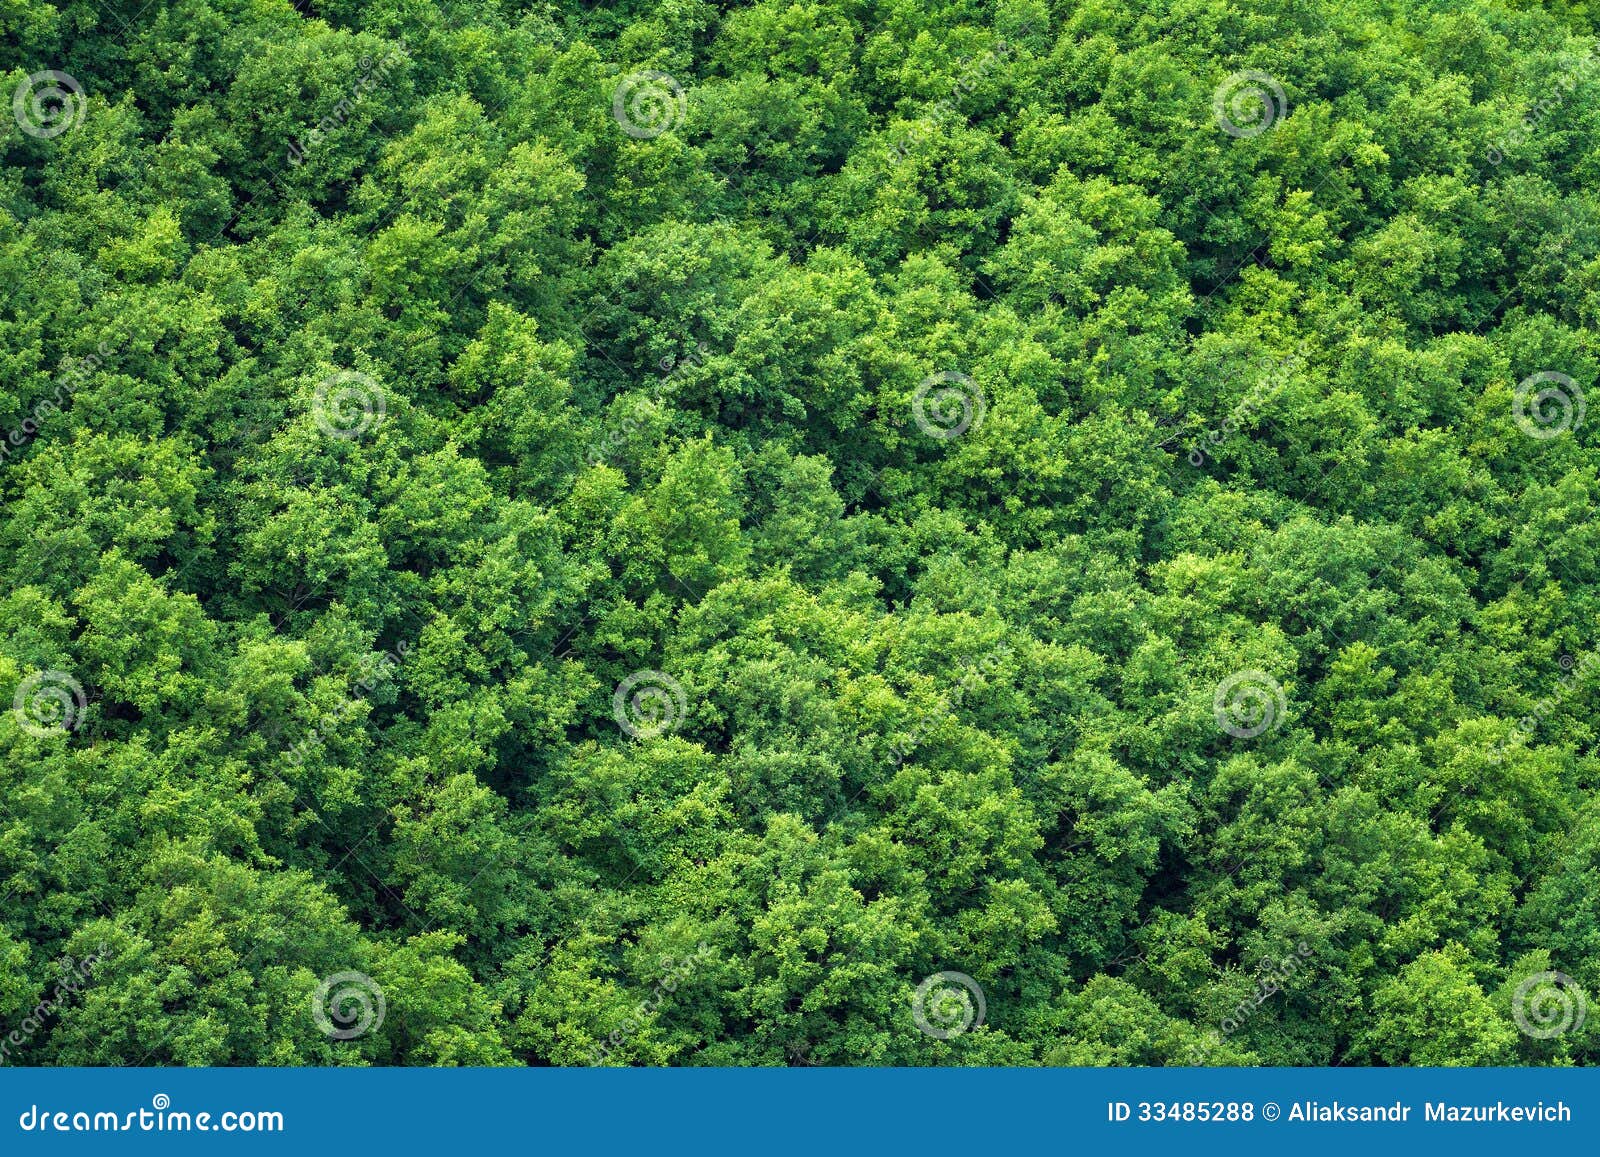 Rừng cây xanh: Hãy nhìn vào hình ảnh này, chúng ta sẽ cảm thấy rất gần gũi, đắm mình trong không gian rừng cây xanh tươi mát, những cảm giác đó sẽ làm cho chúng ta bớt căng thẳng, thư giãn ngay lập tức.